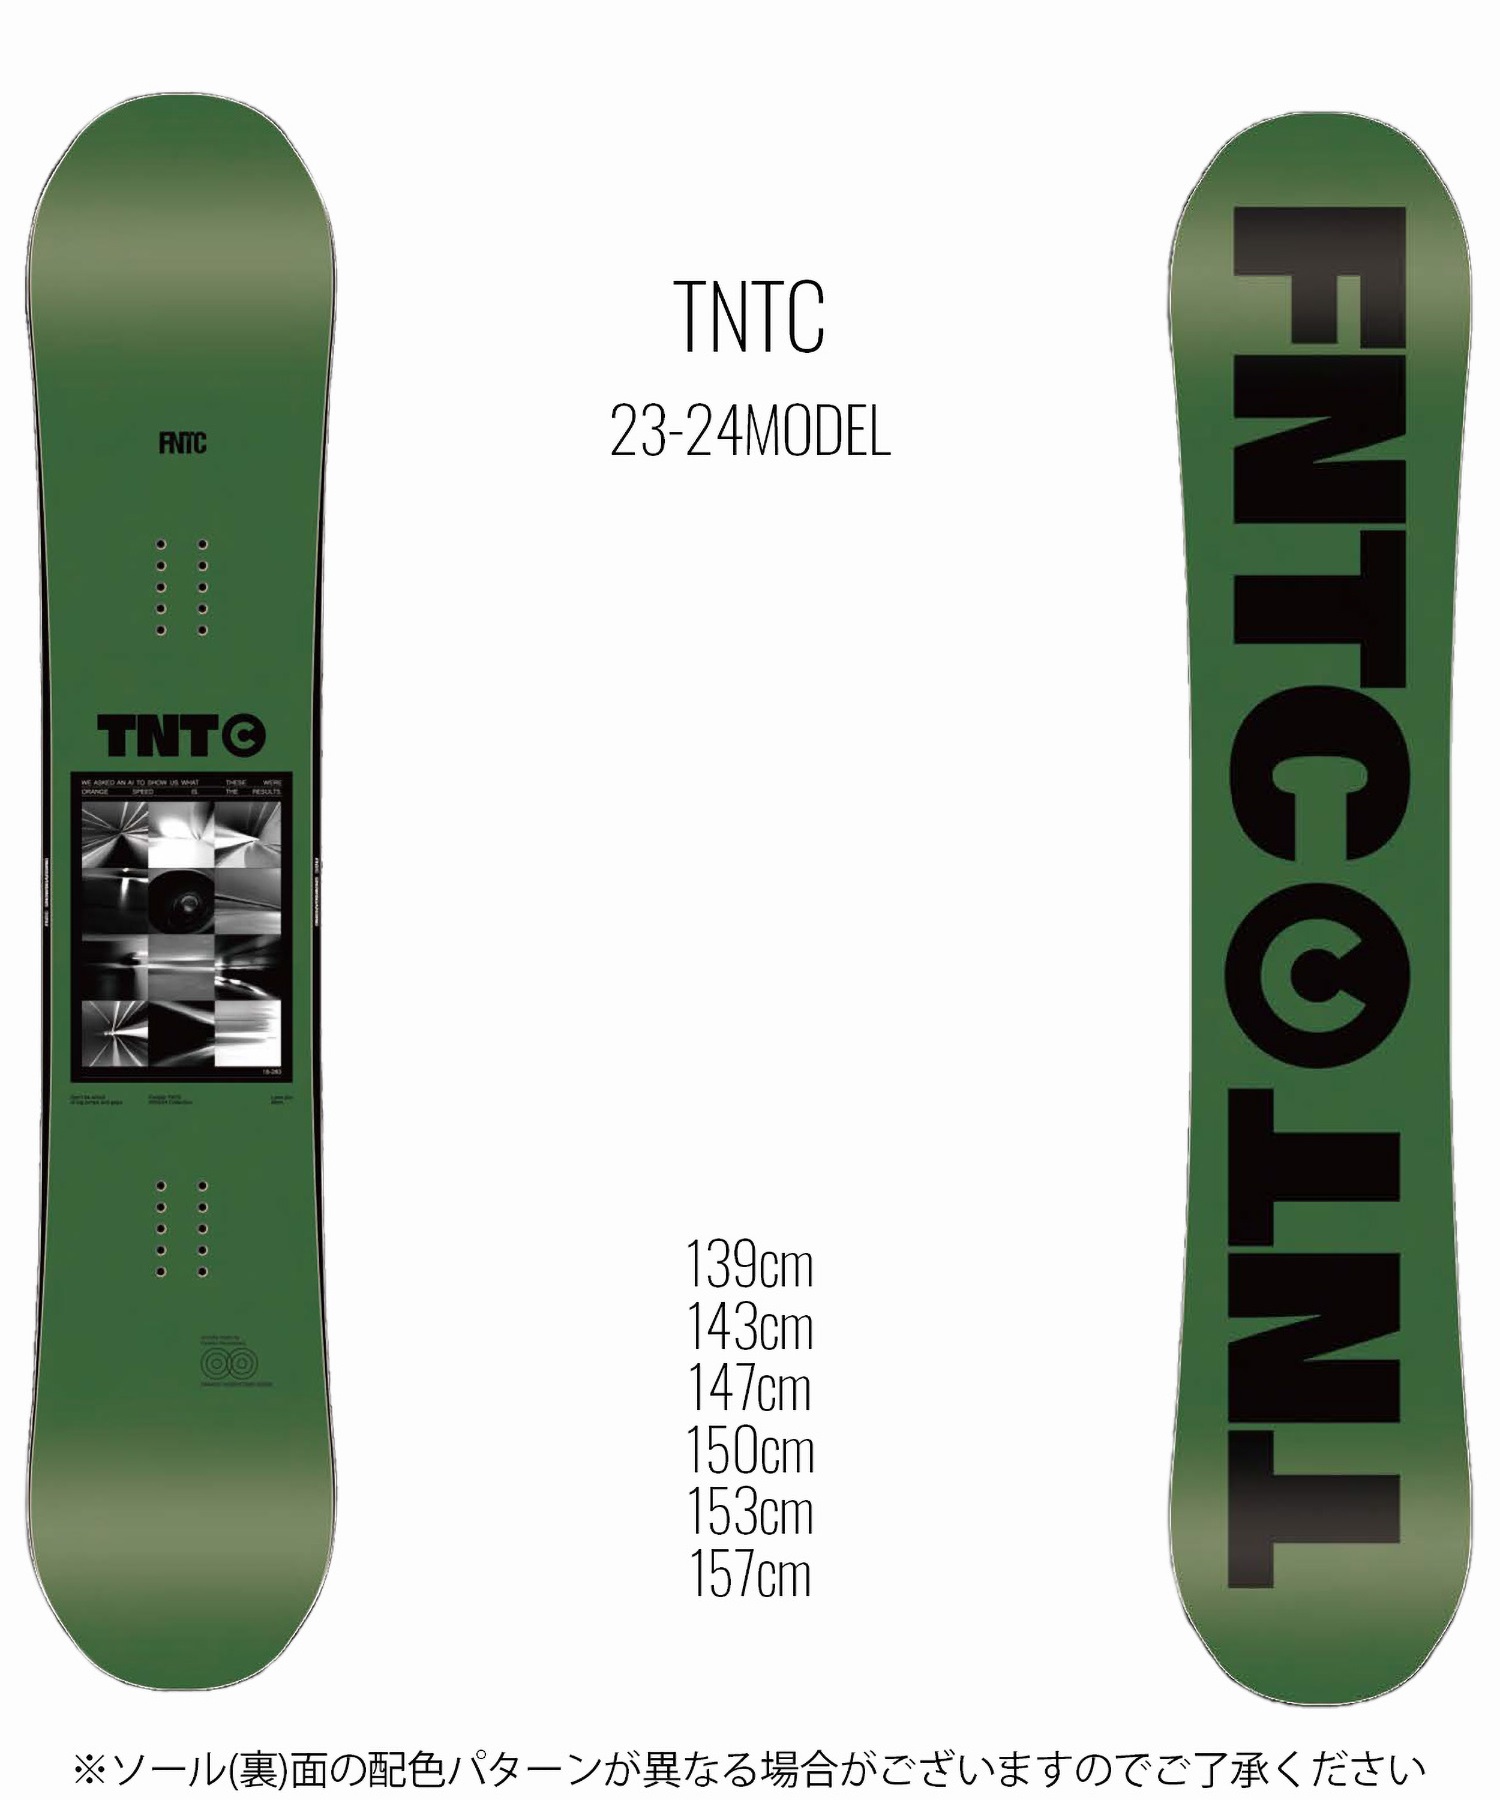 FNTC TNTC 21-22モデル 153cm30日程度